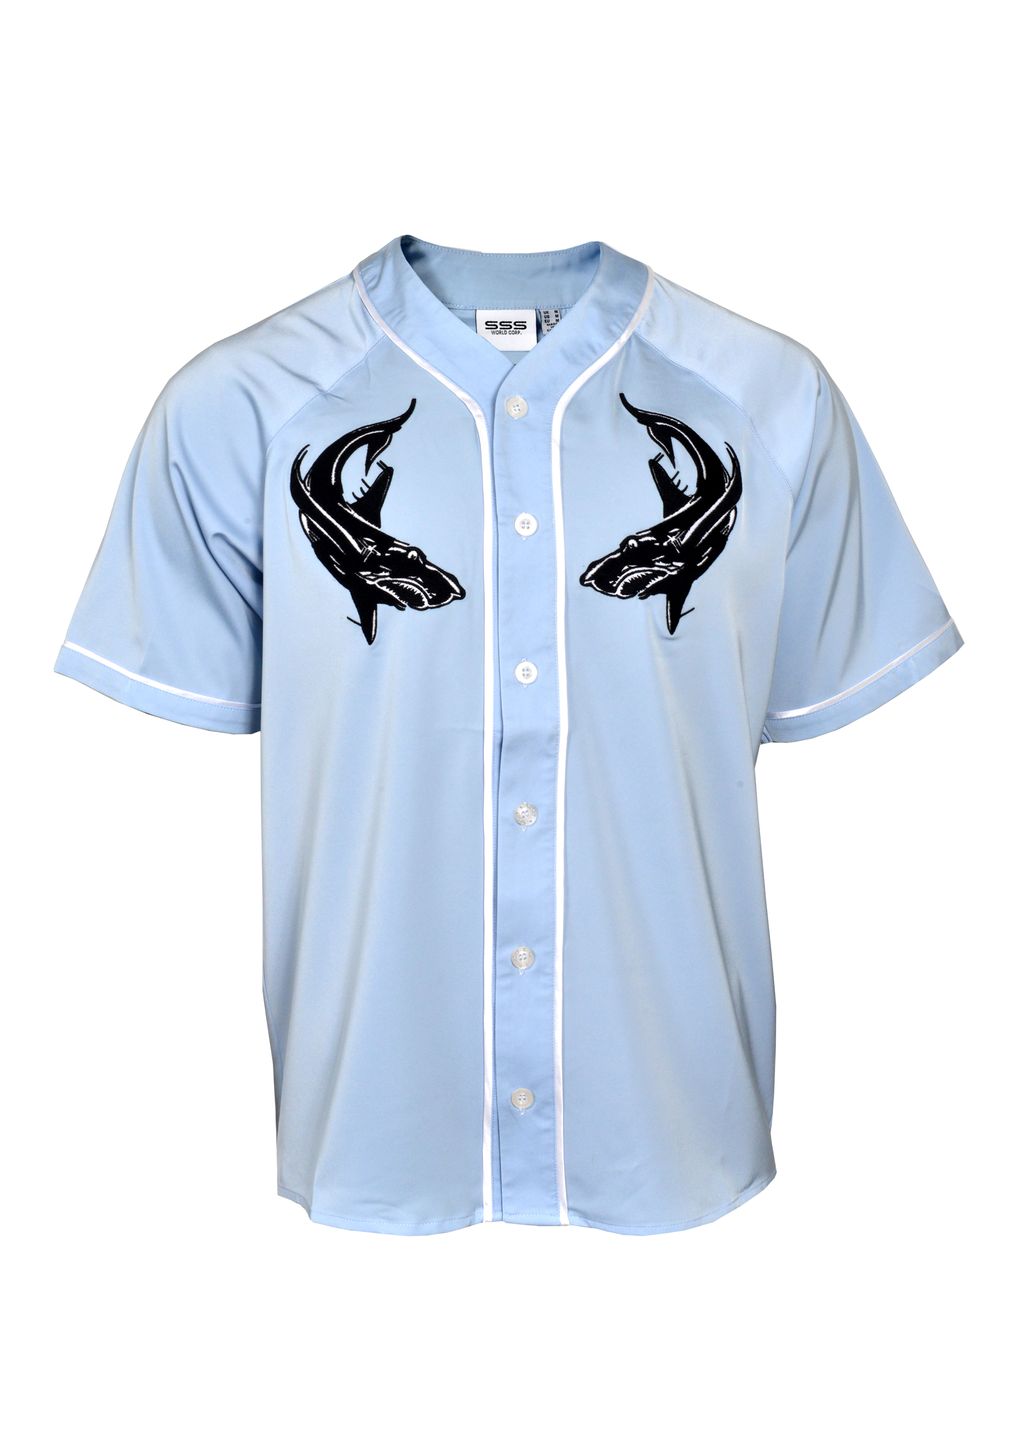 sharks Adult Full Button Baseball Jersey